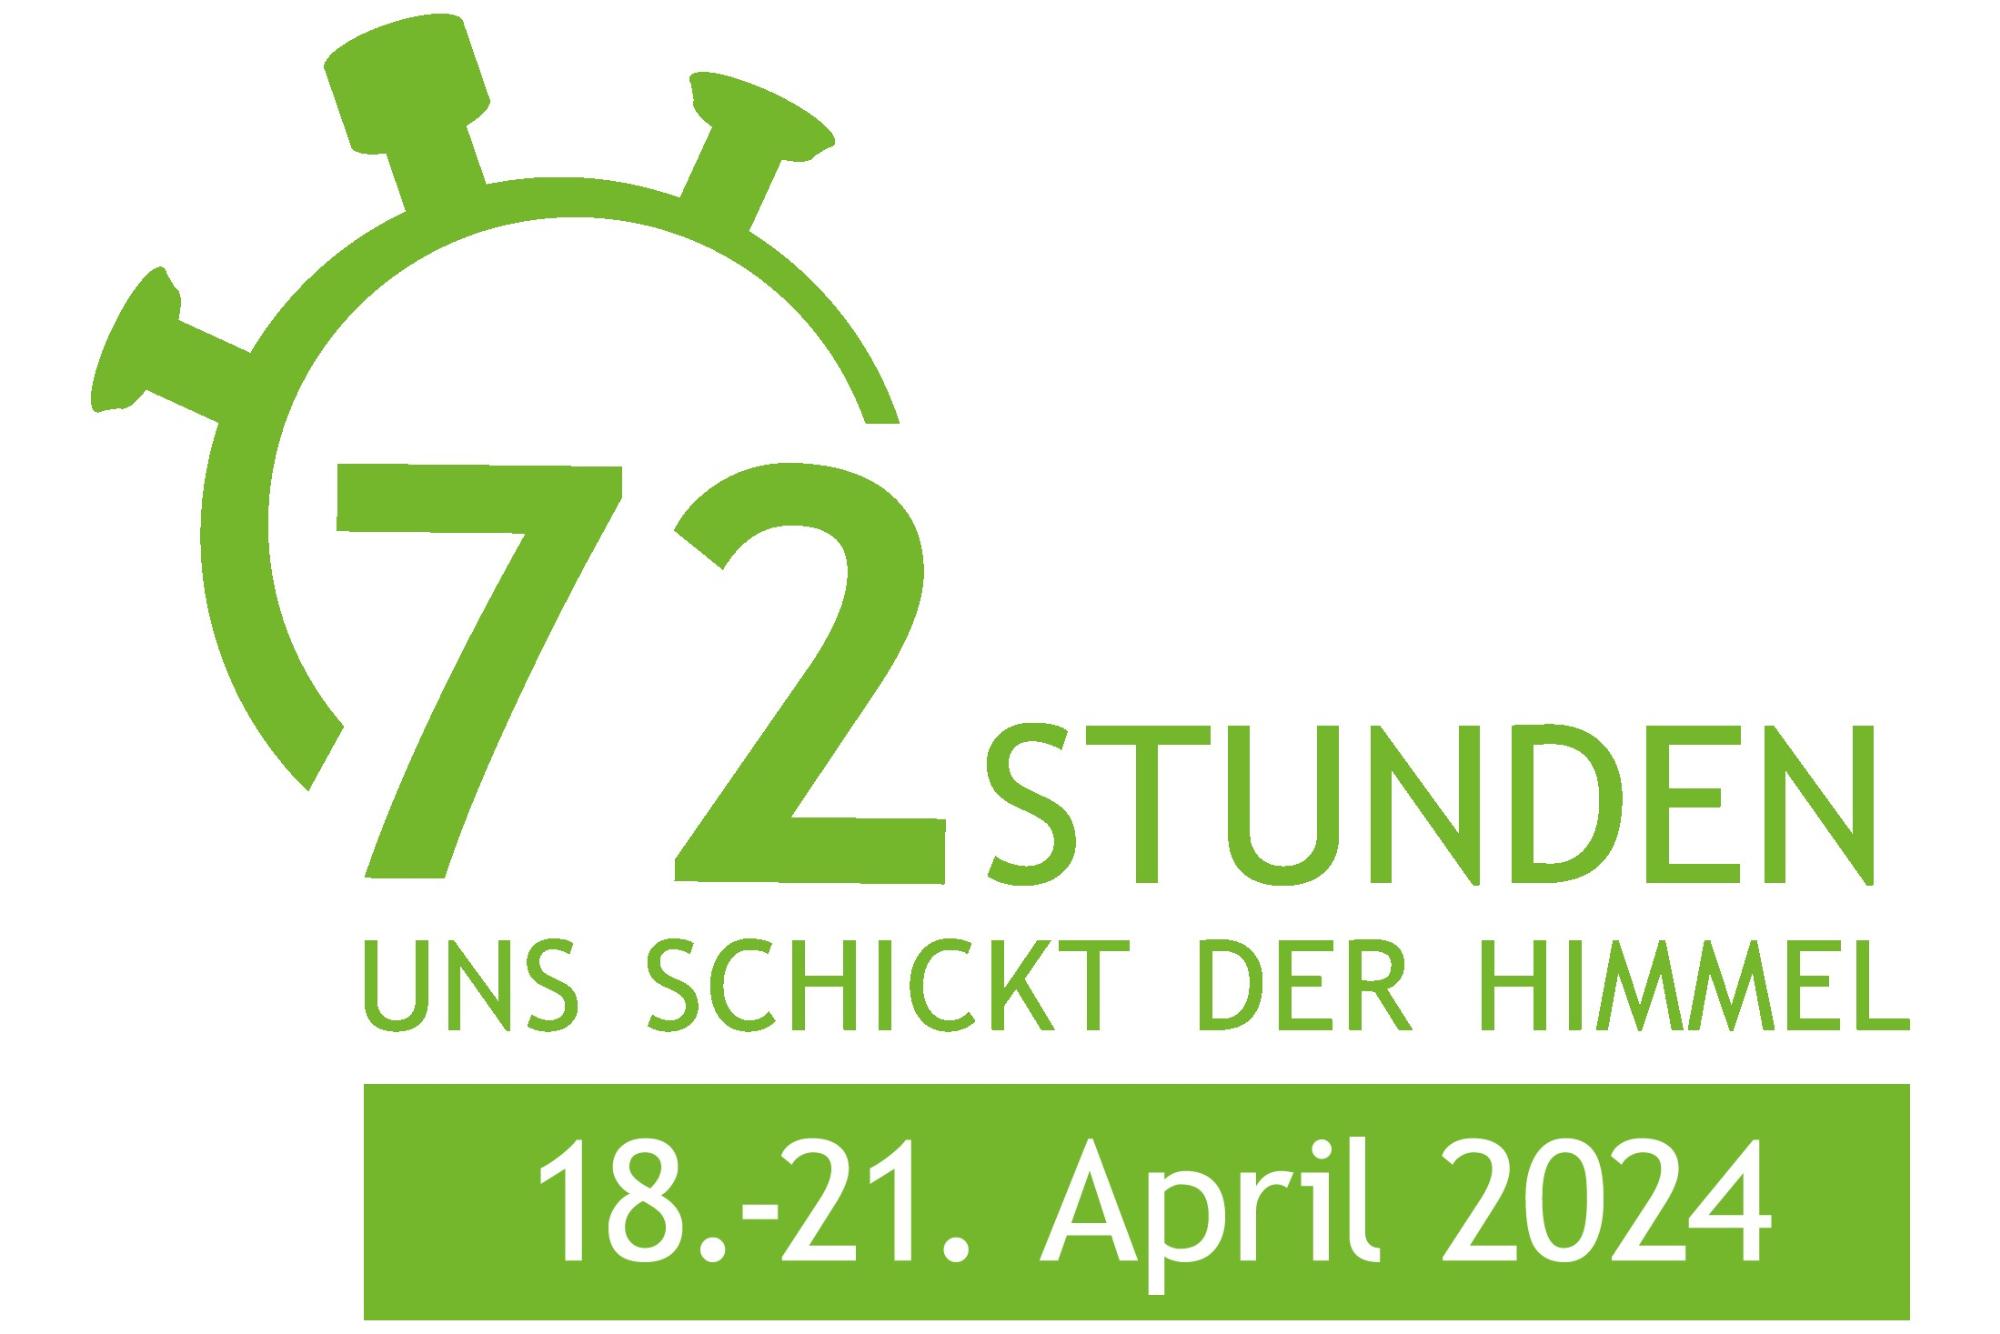 logo-72-stunden-aktion-2024-datum-gruen_3_2